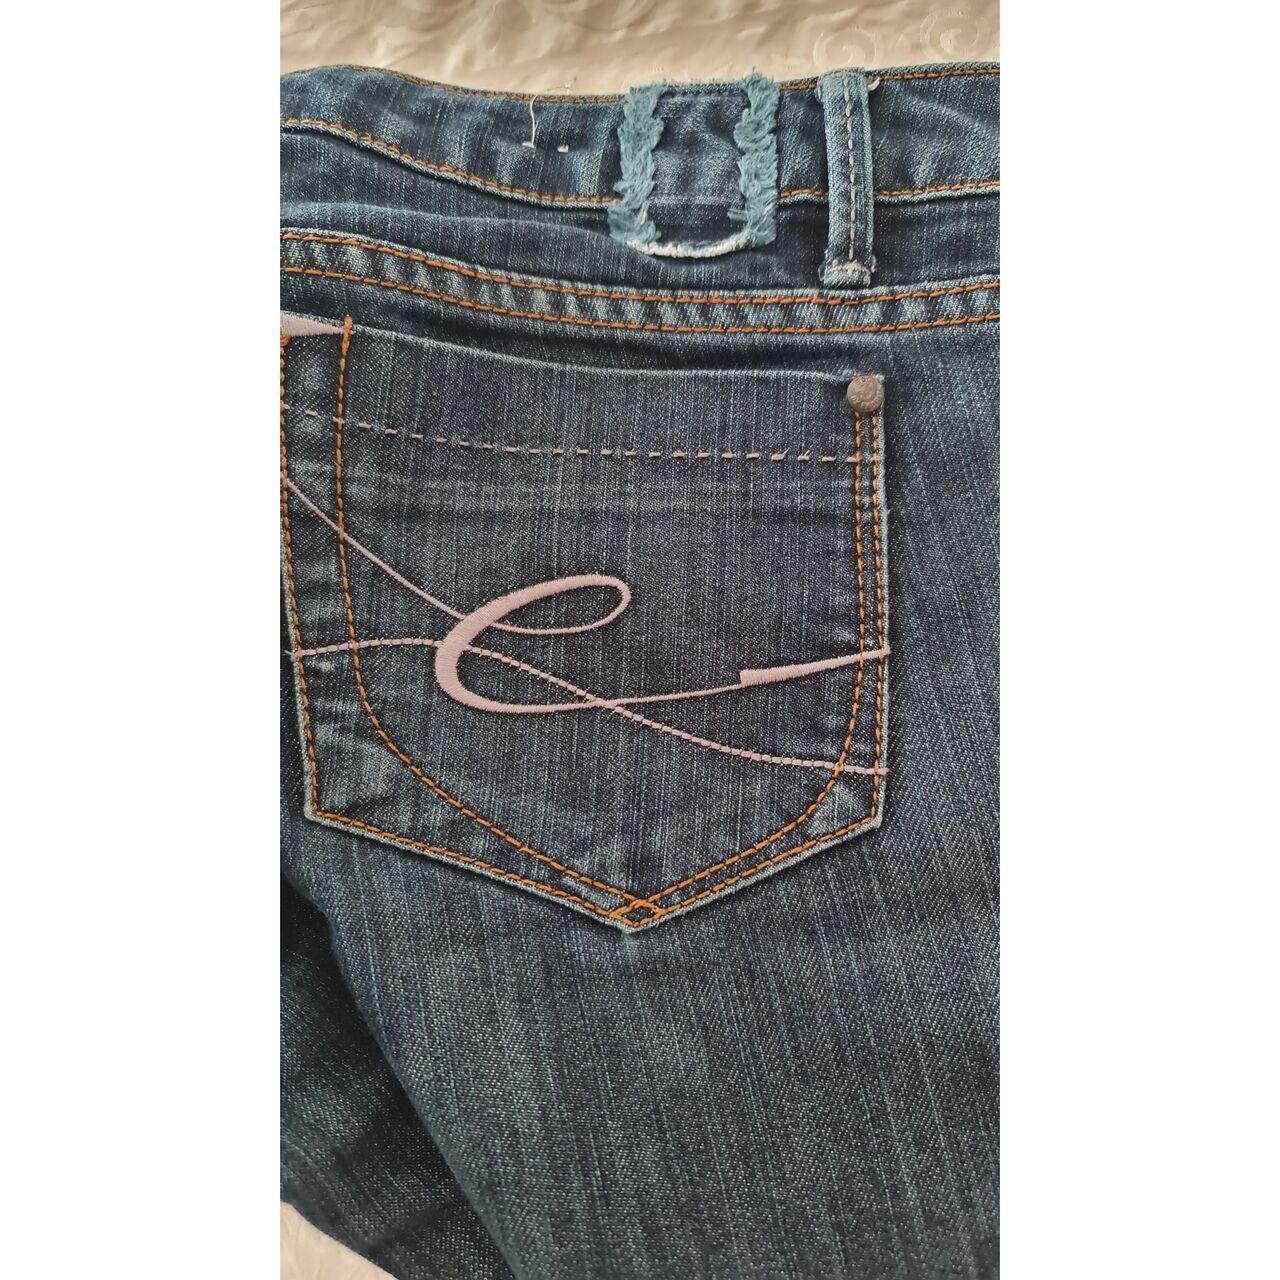 Esprit Blue Jeans Long Pants